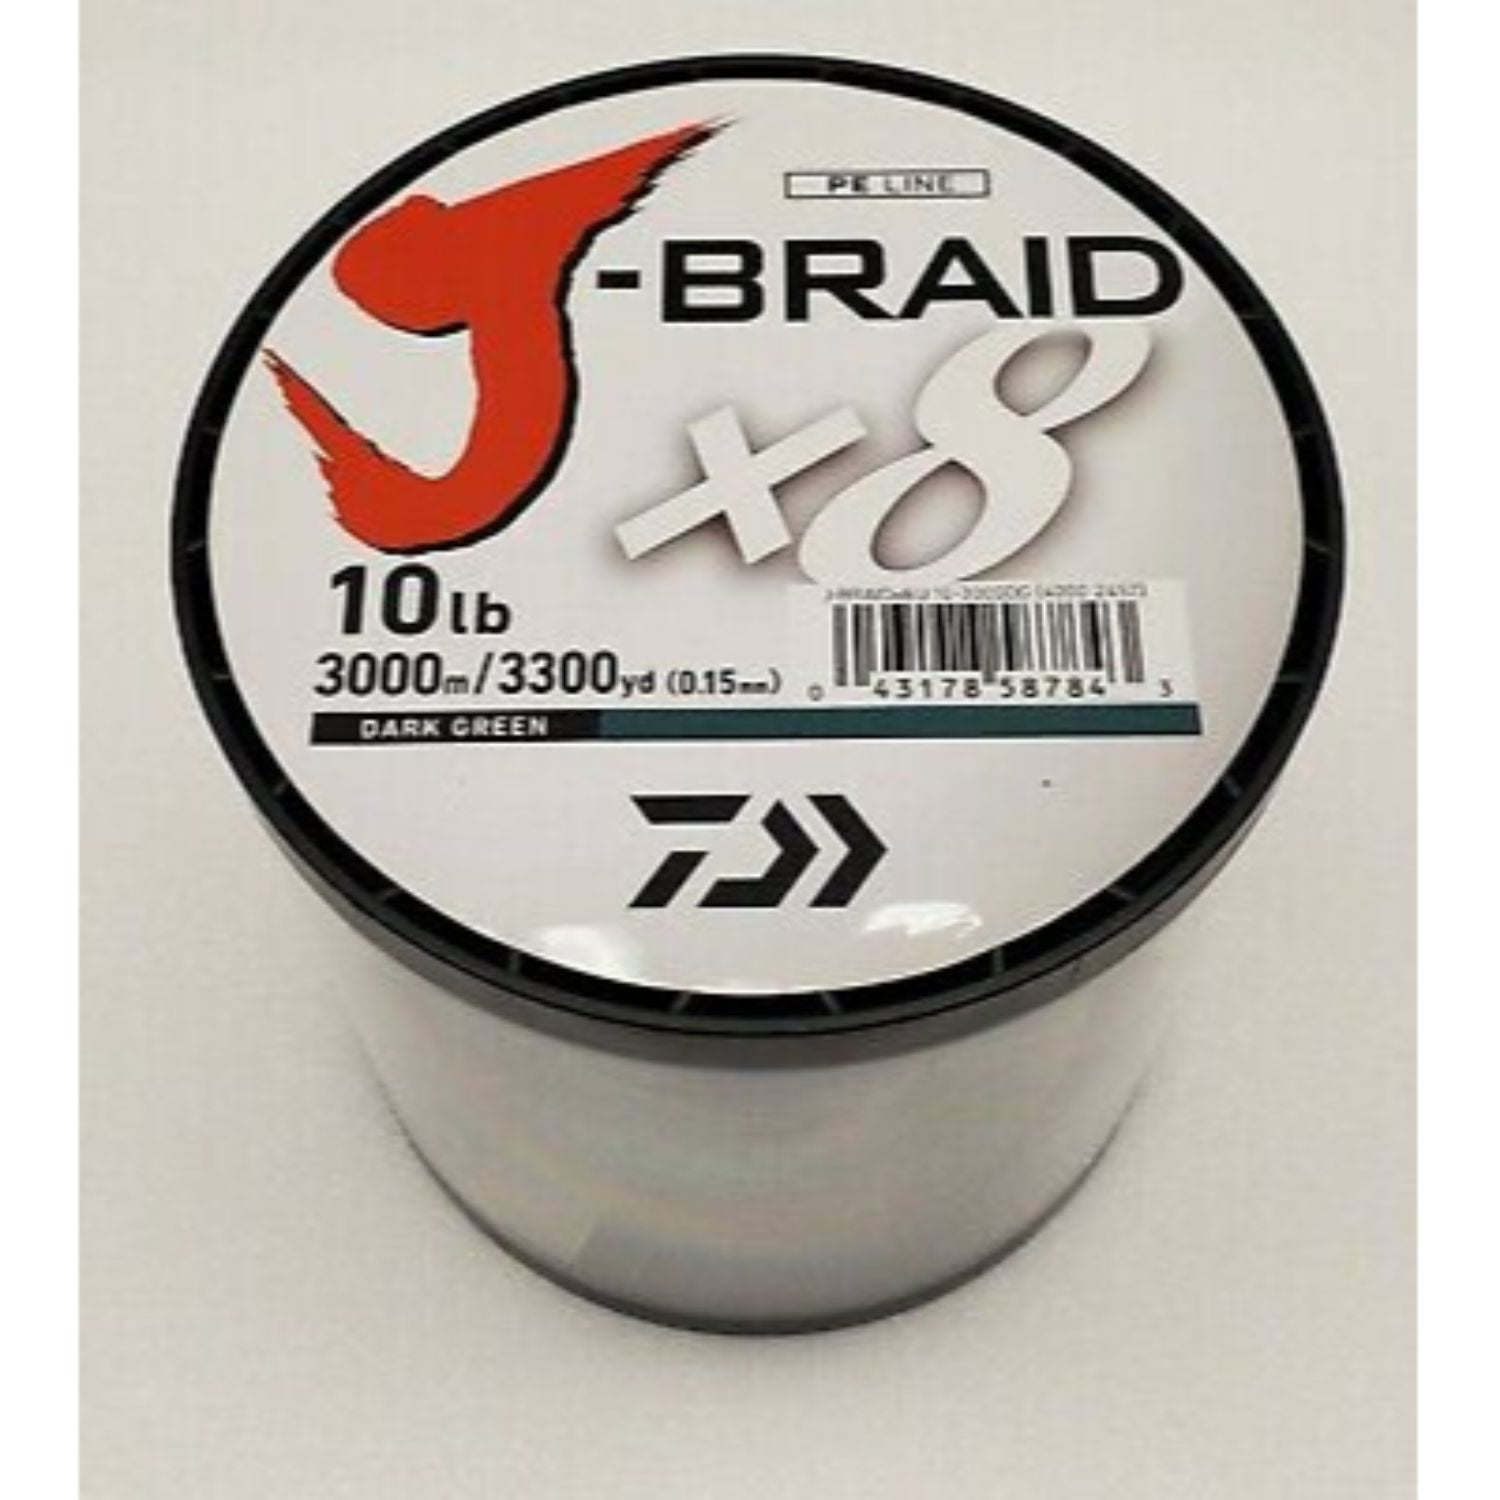 Daiwa J-Braid x8 Braided Line DARK GREEN 10lb, 3300yd - JB8U10